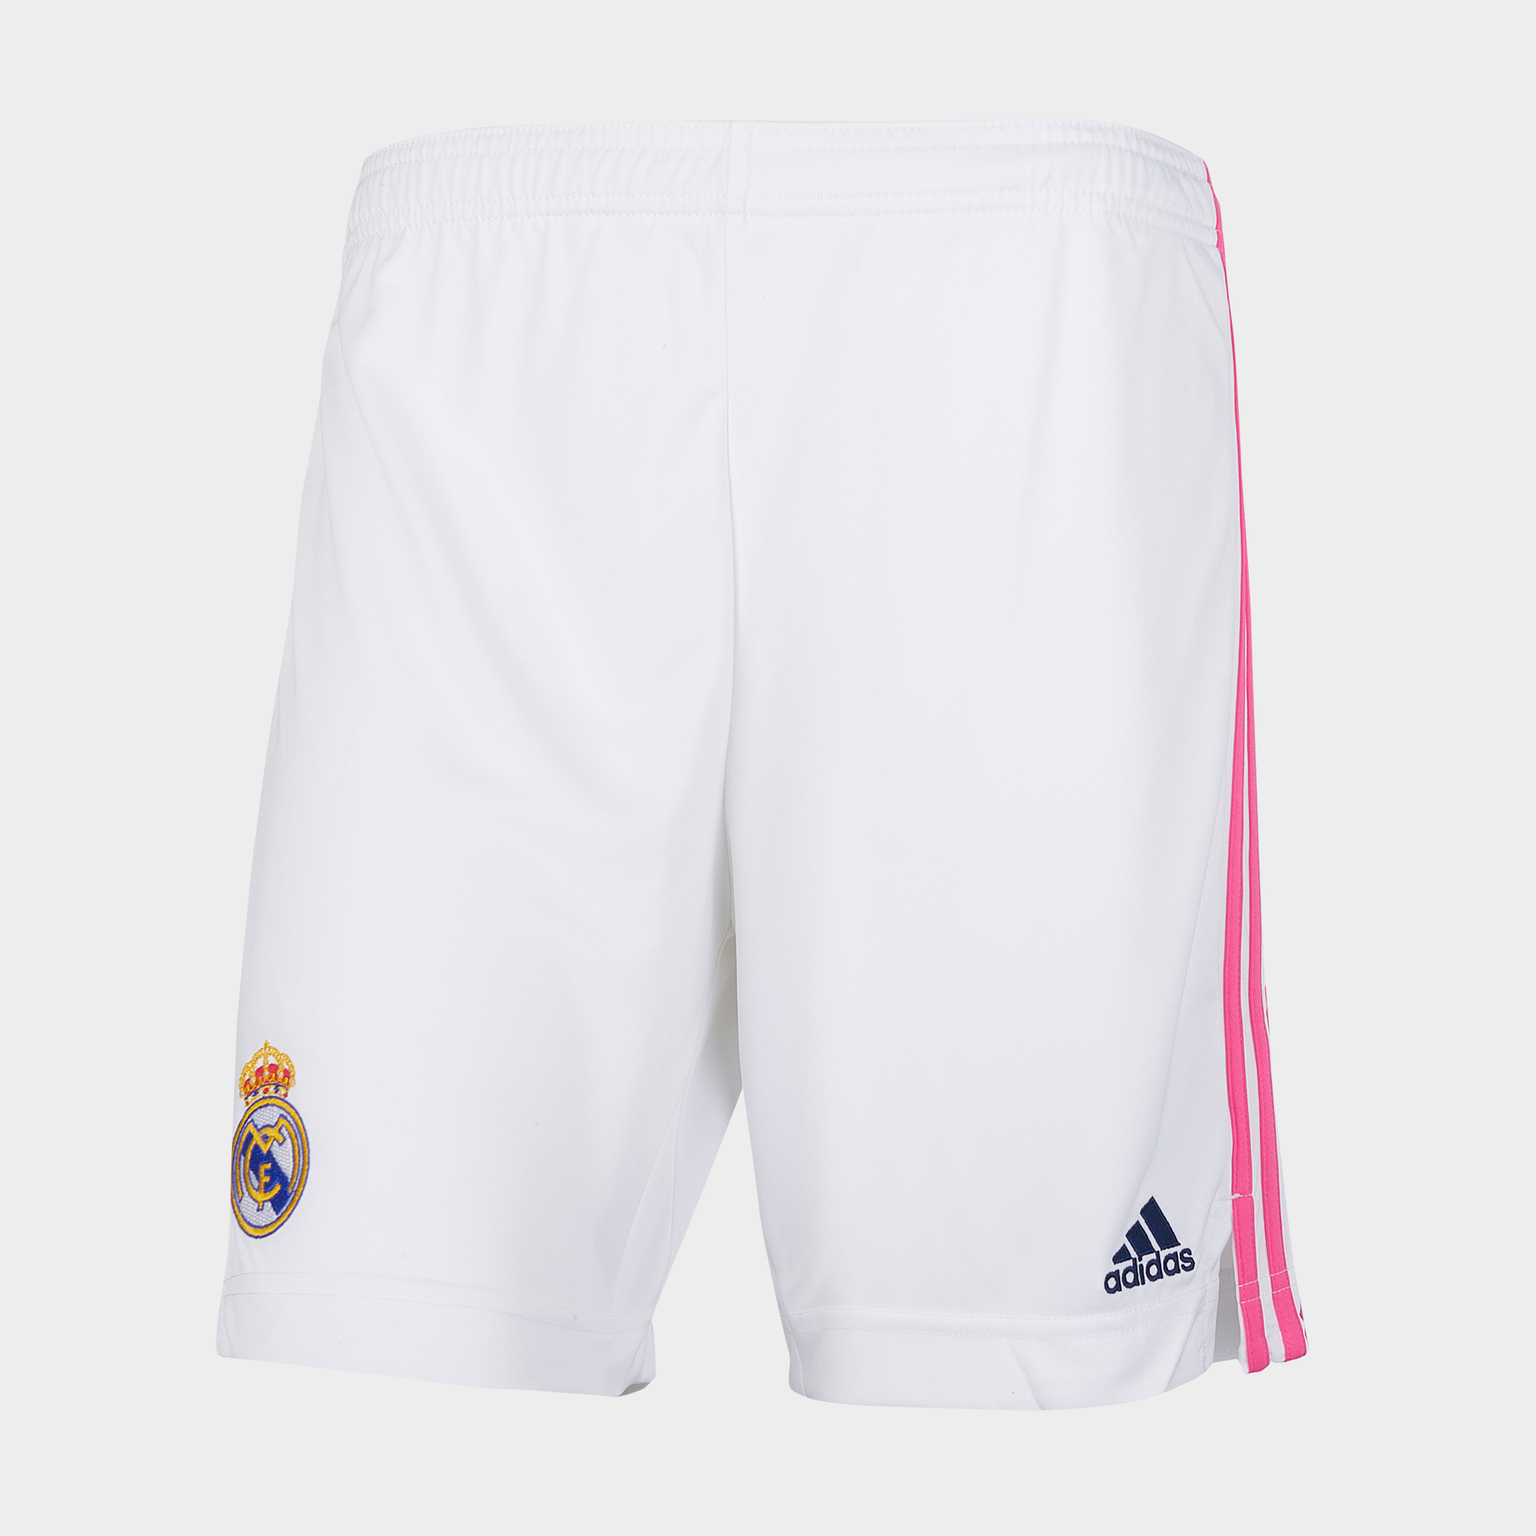 Шорты домашние подростковые Adidas Real Madrid сезон 2020/21